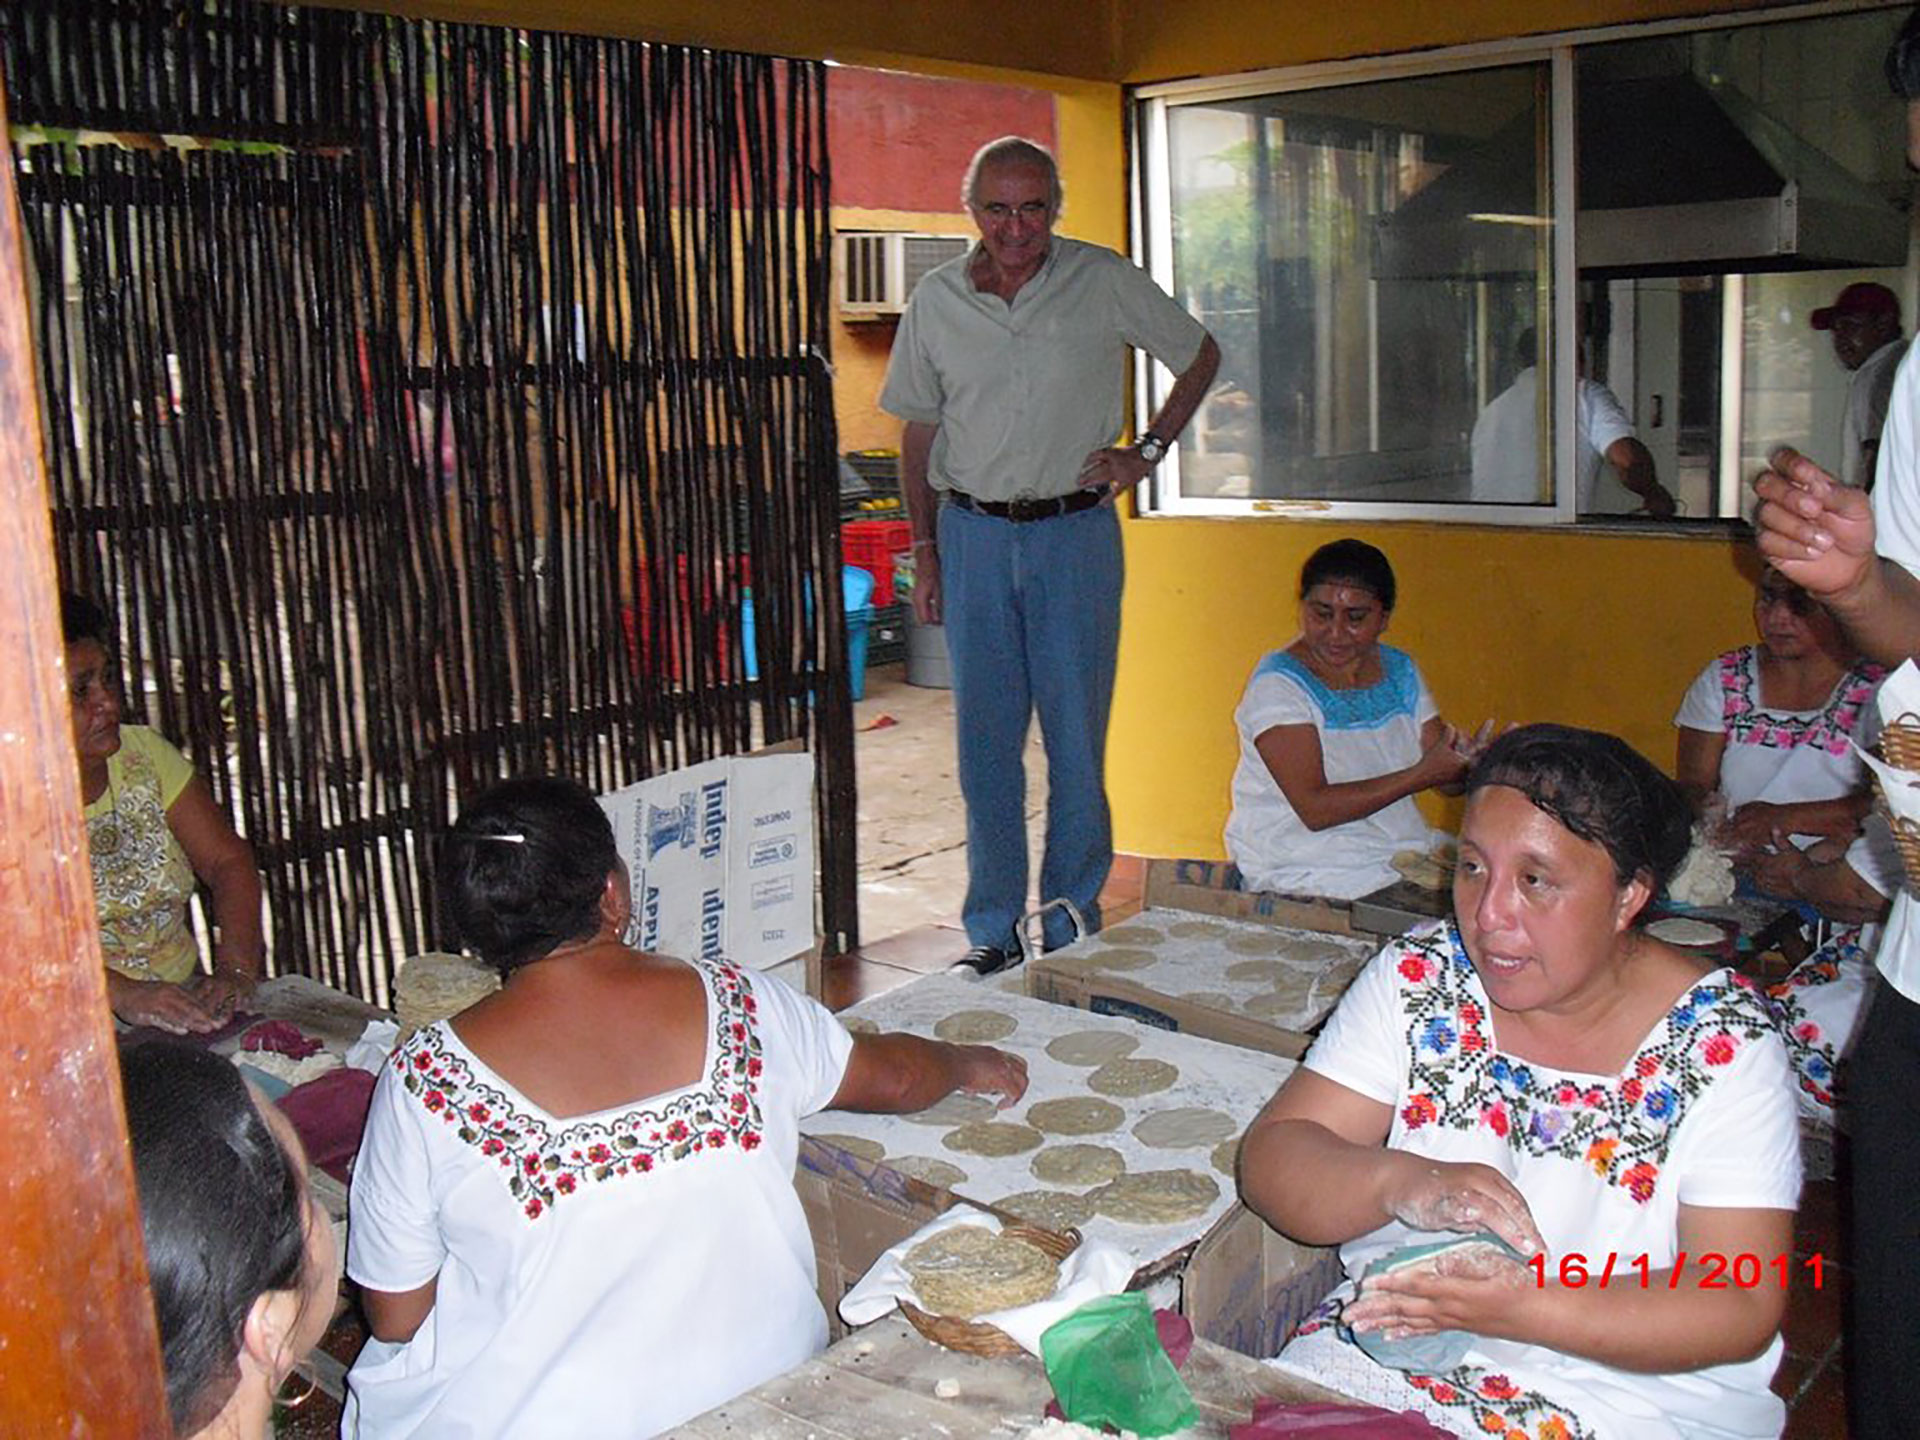 La observación de las tradiciones nutricionales de la población de embarazadas en Guatemala fue fundamental para que el doctor Belizán descubriera la asociación entre ingesta de calcio y preeclampsia